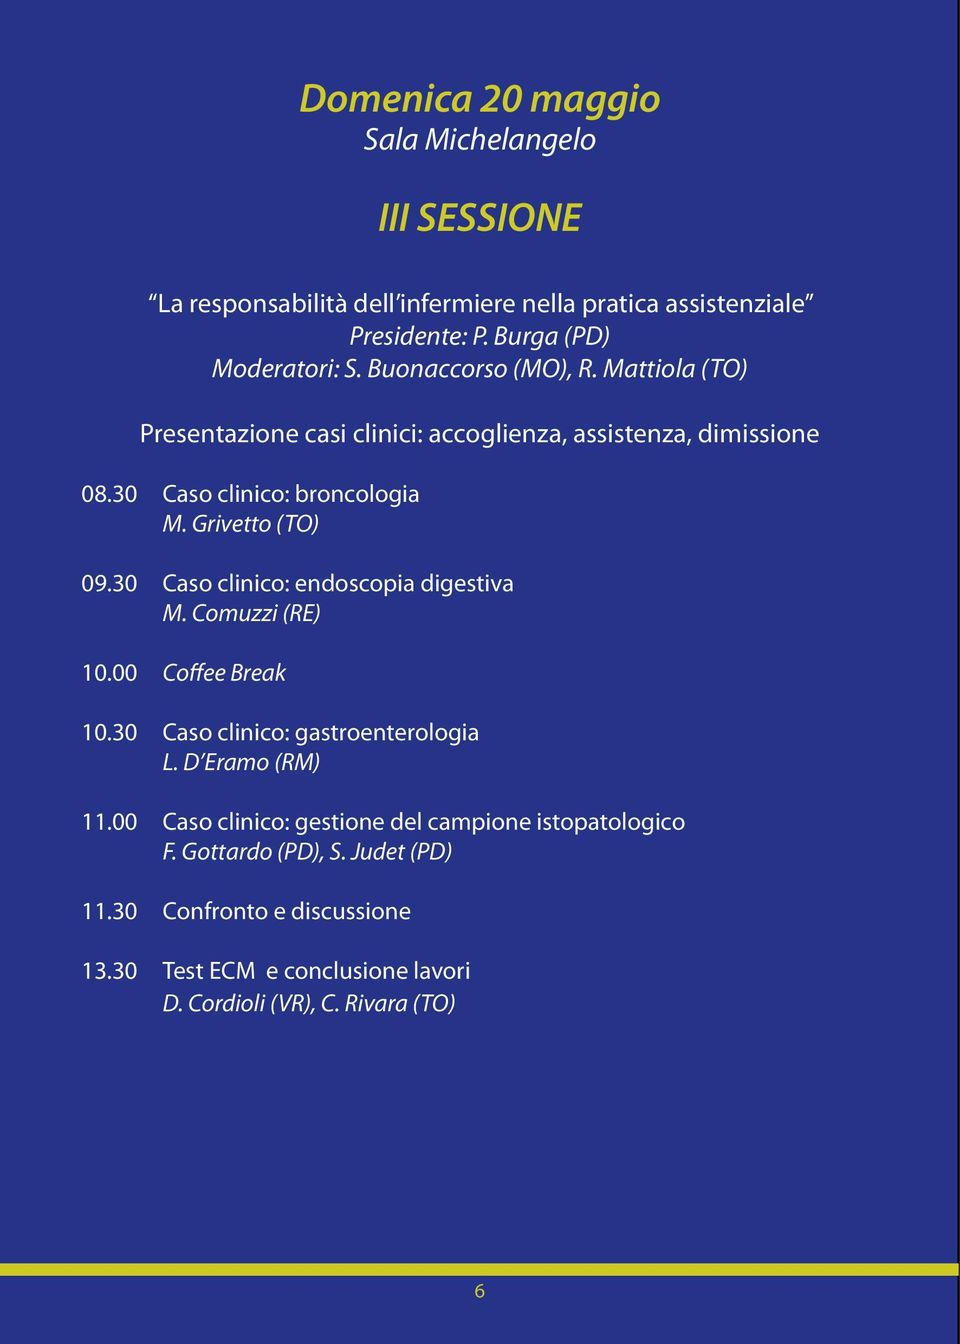 30 Caso clinico: endoscopia digestiva M. Comuzzi (RE) 10.00 Coffee Break 10.30 Caso clinico: gastroenterologia L. D Eramo (RM) 11.